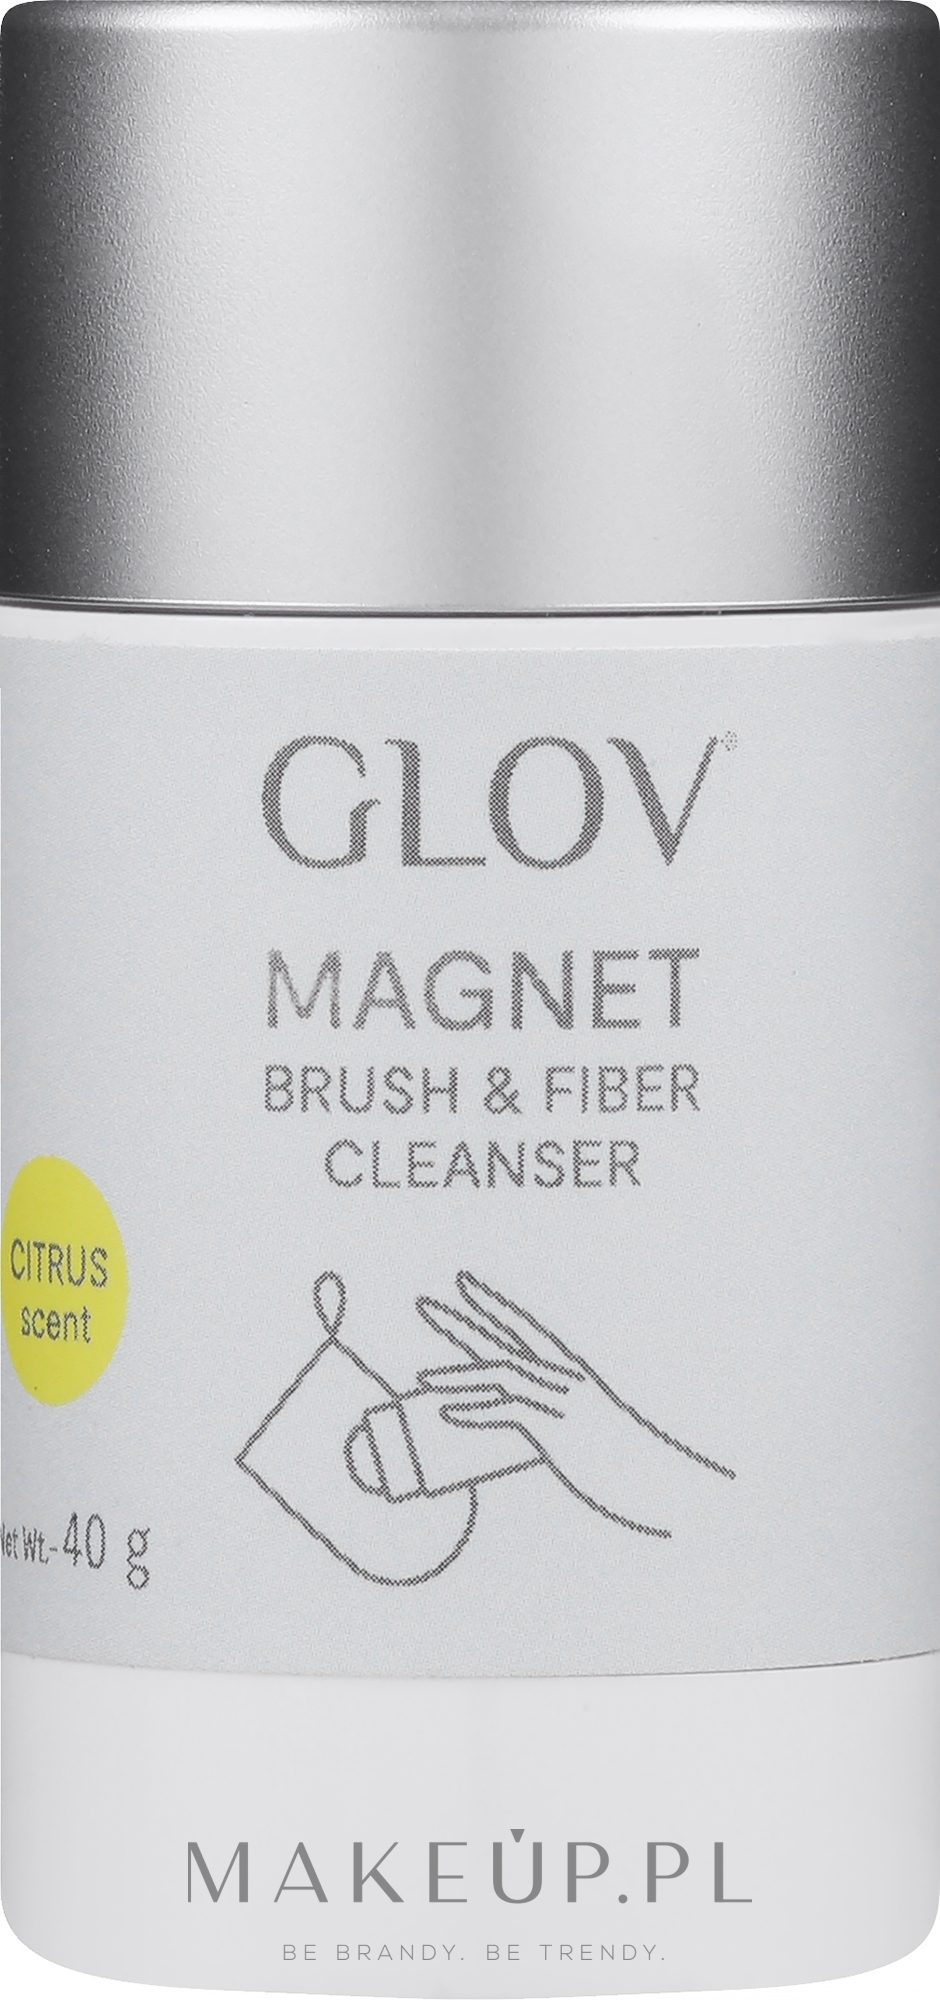 Mydło do oczyszczenia pędzli i rękawic - Glov Magnet Cleanser Stick  — Zdjęcie 40 g